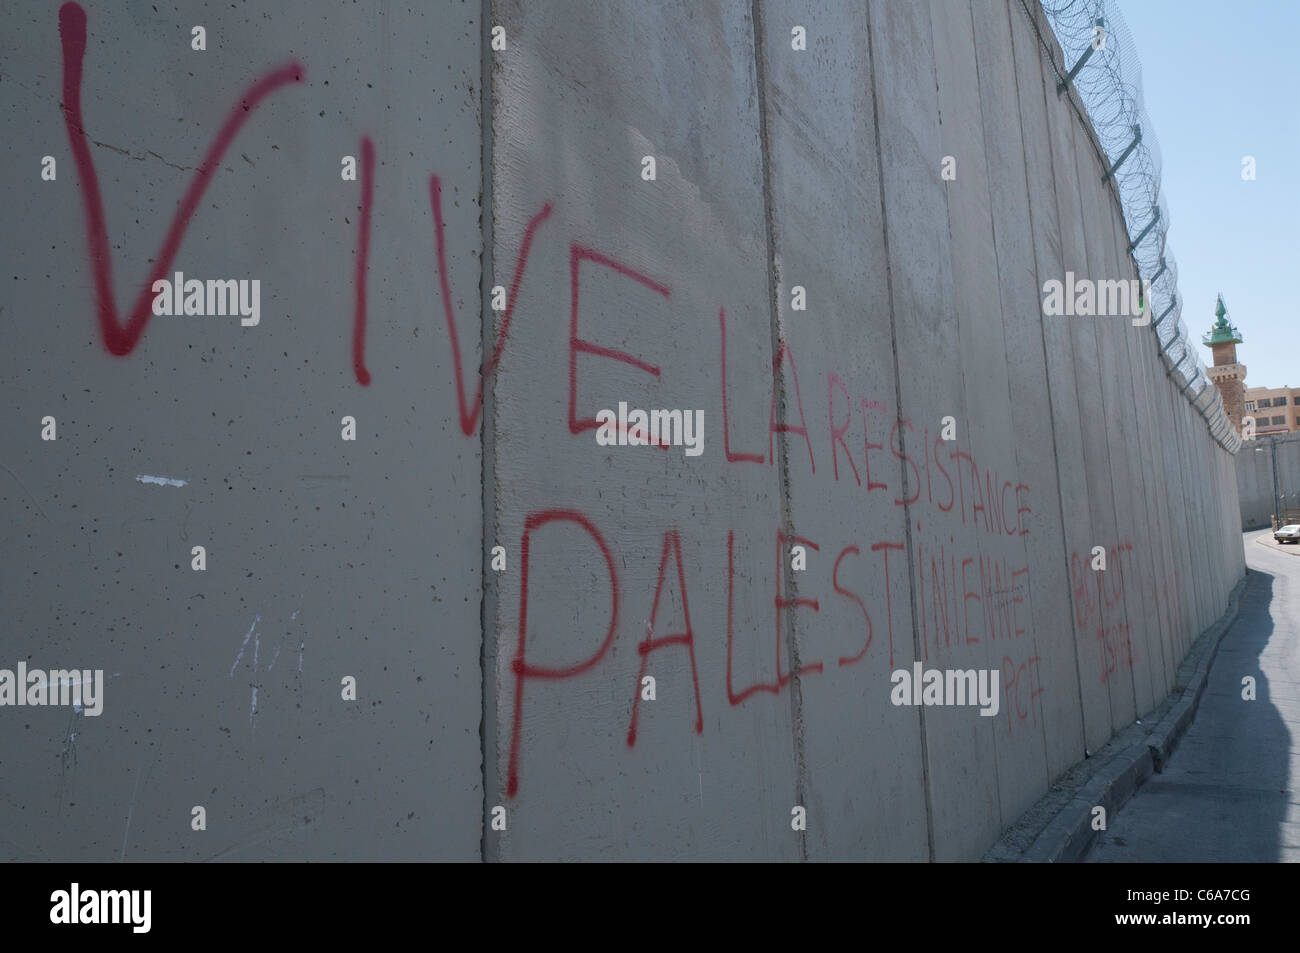 La barrière de séparation à Abu Dis de graffitis. Jérusalem. Israël Banque D'Images